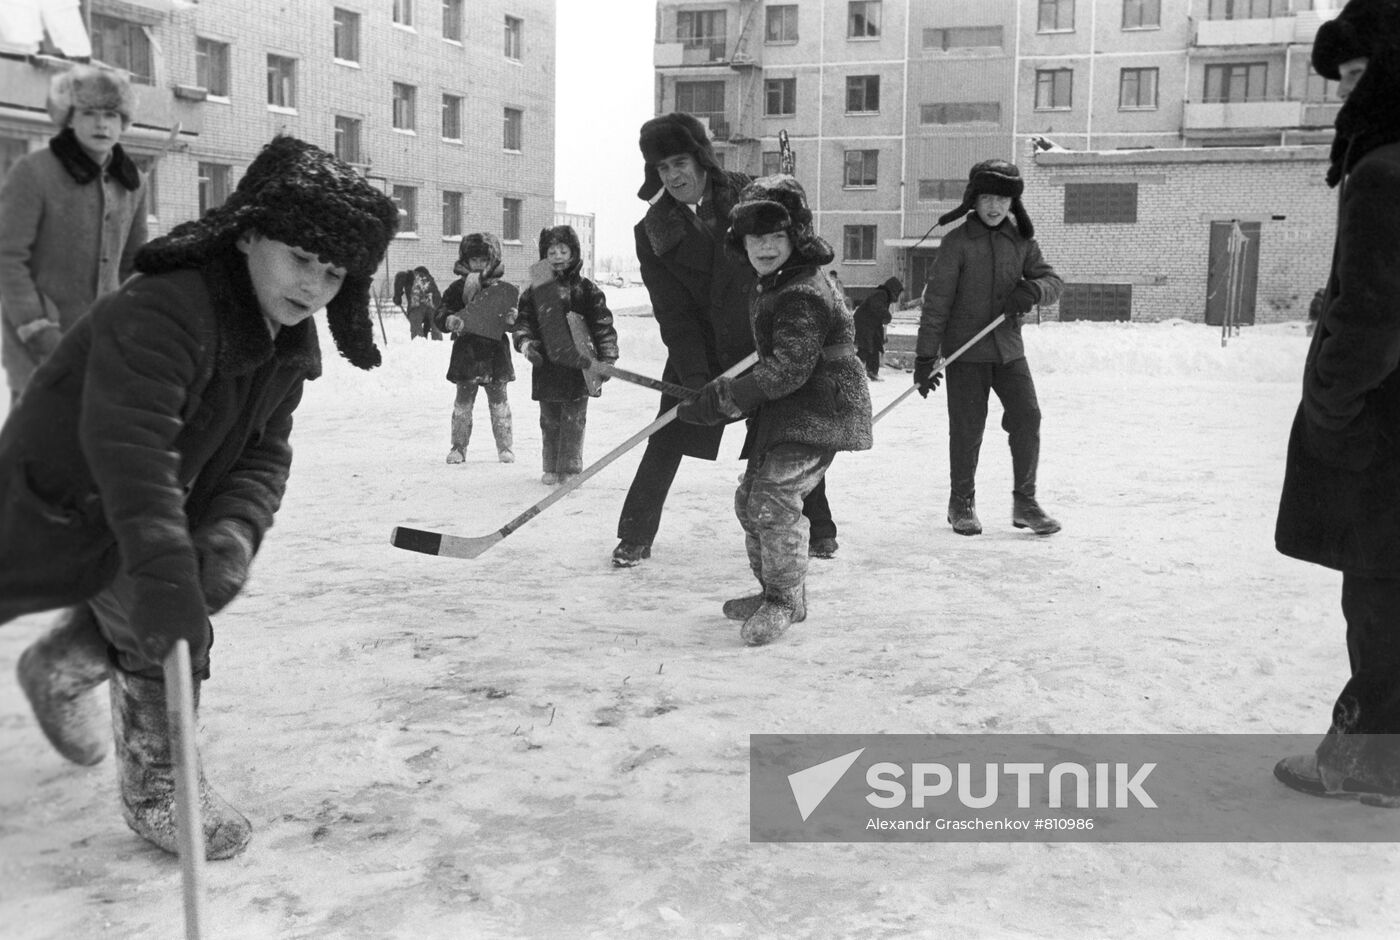 Boys playing hockey in their yard